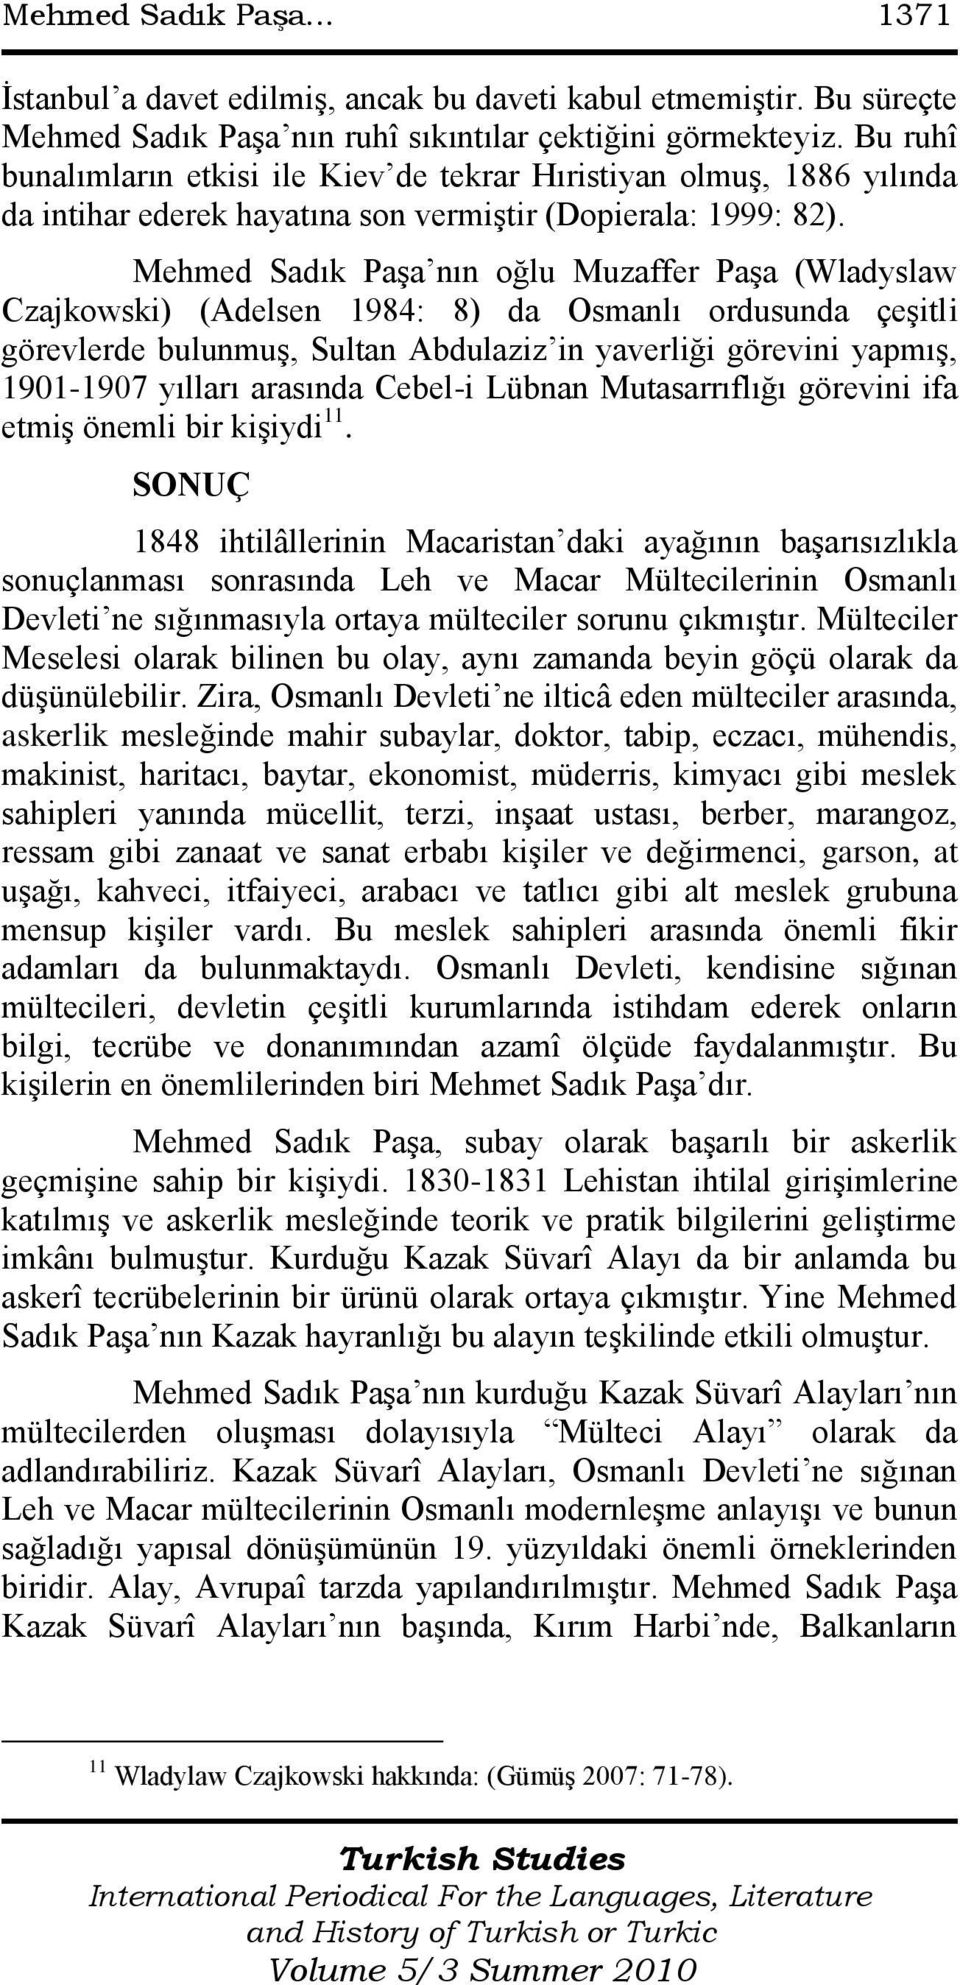 Mehmed Sadık PaĢa nın oğlu Muzaffer PaĢa (Wladyslaw Czajkowski) (Adelsen 1984: 8) da Osmanlı ordusunda çeģitli görevlerde bulunmuģ, Sultan Abdulaziz in yaverliği görevini yapmıģ, 1901-1907 yılları